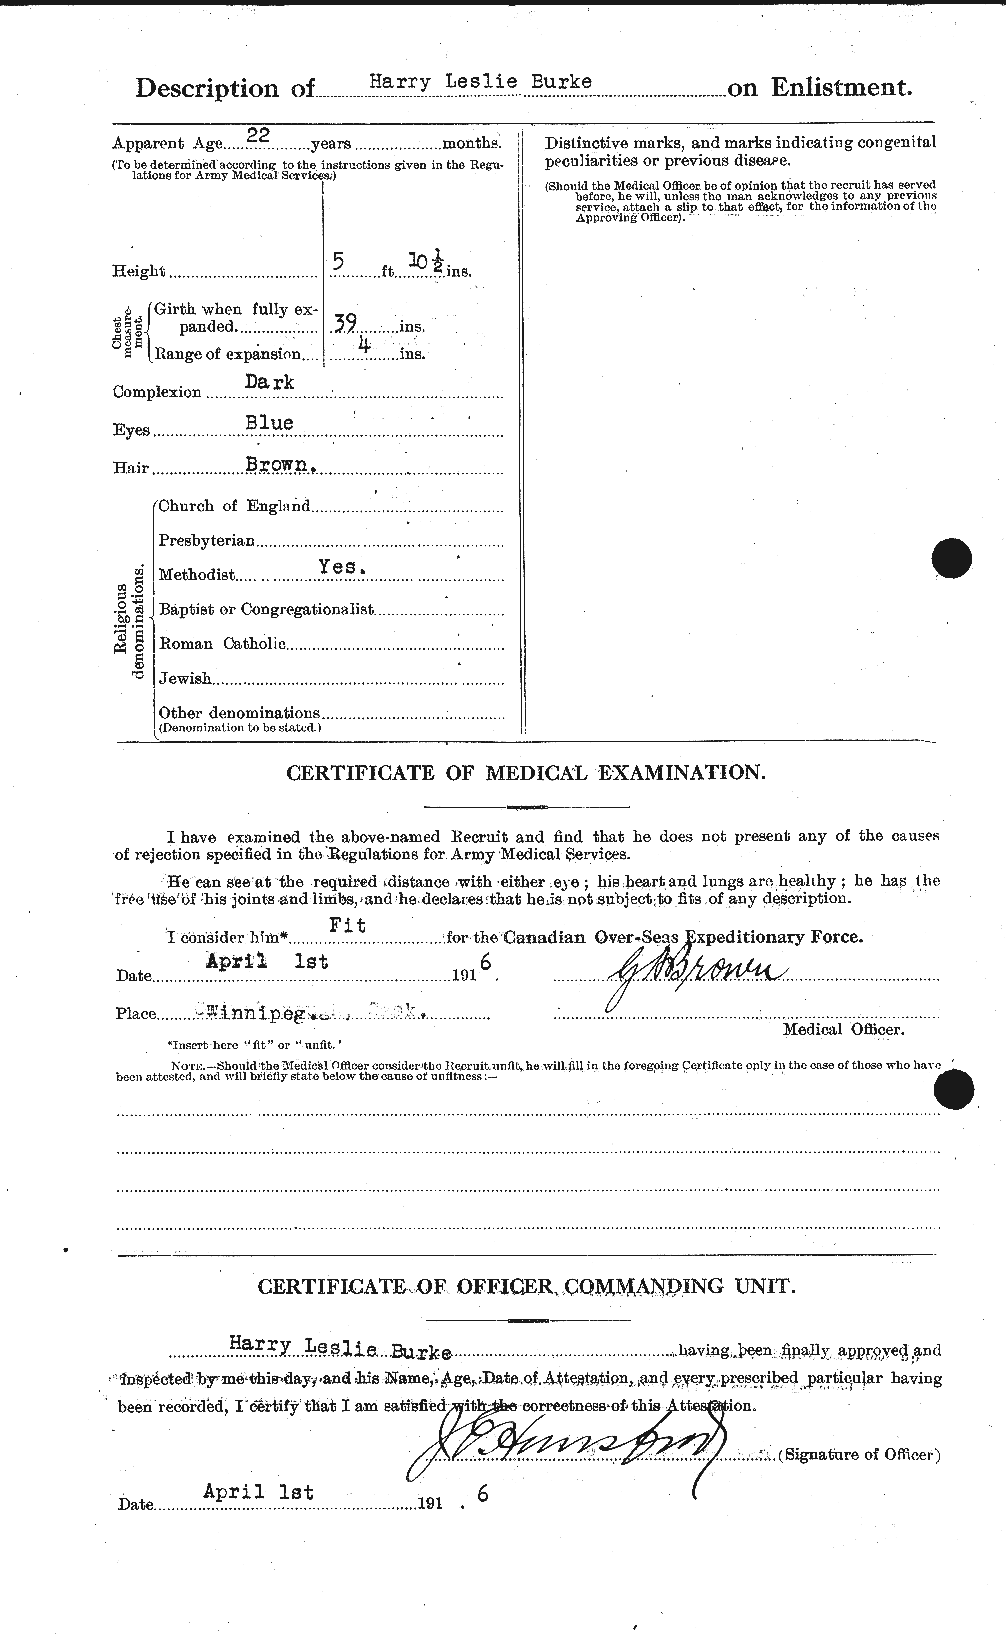 Dossiers du Personnel de la Première Guerre mondiale - CEC 272511b